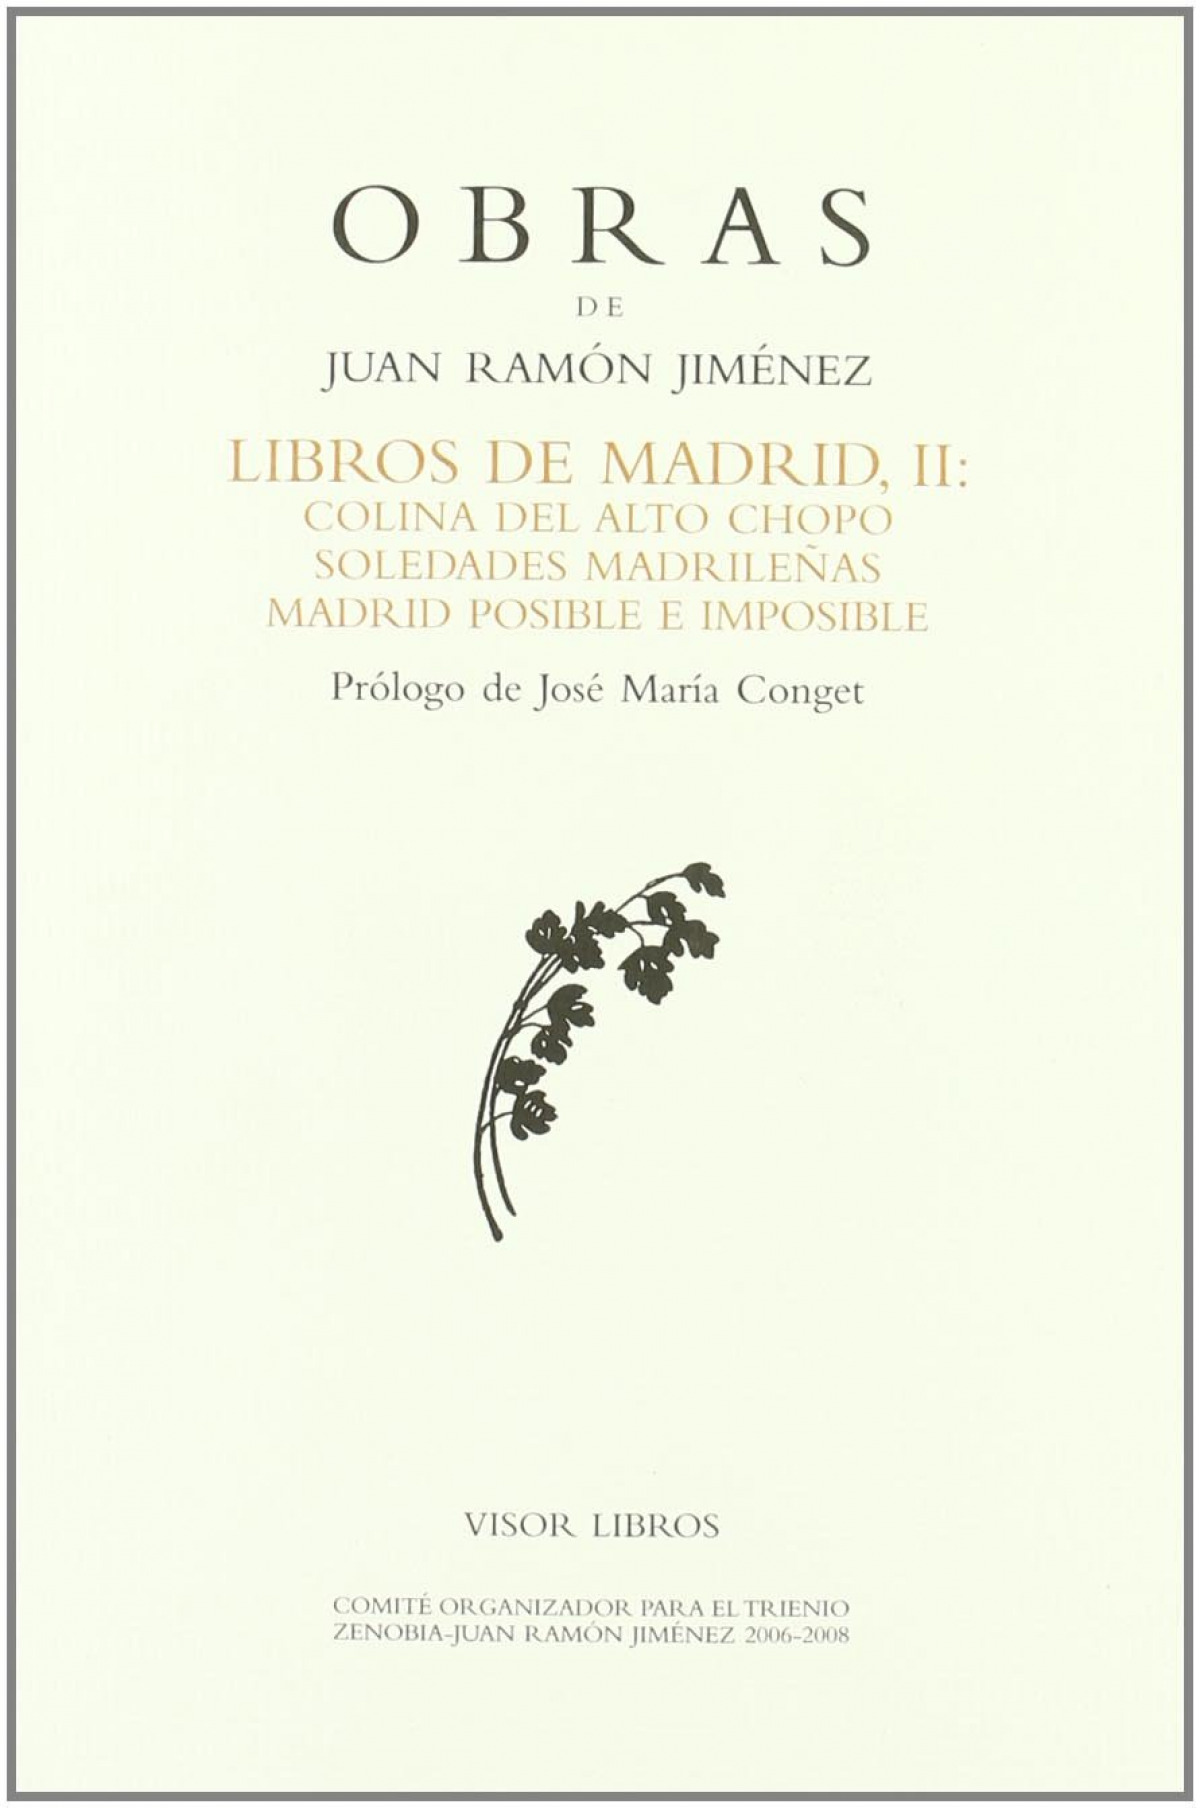 Libros de madrid ii obras j. r. jimenez -32 colina del alto - Jimenez, Juan Ramon